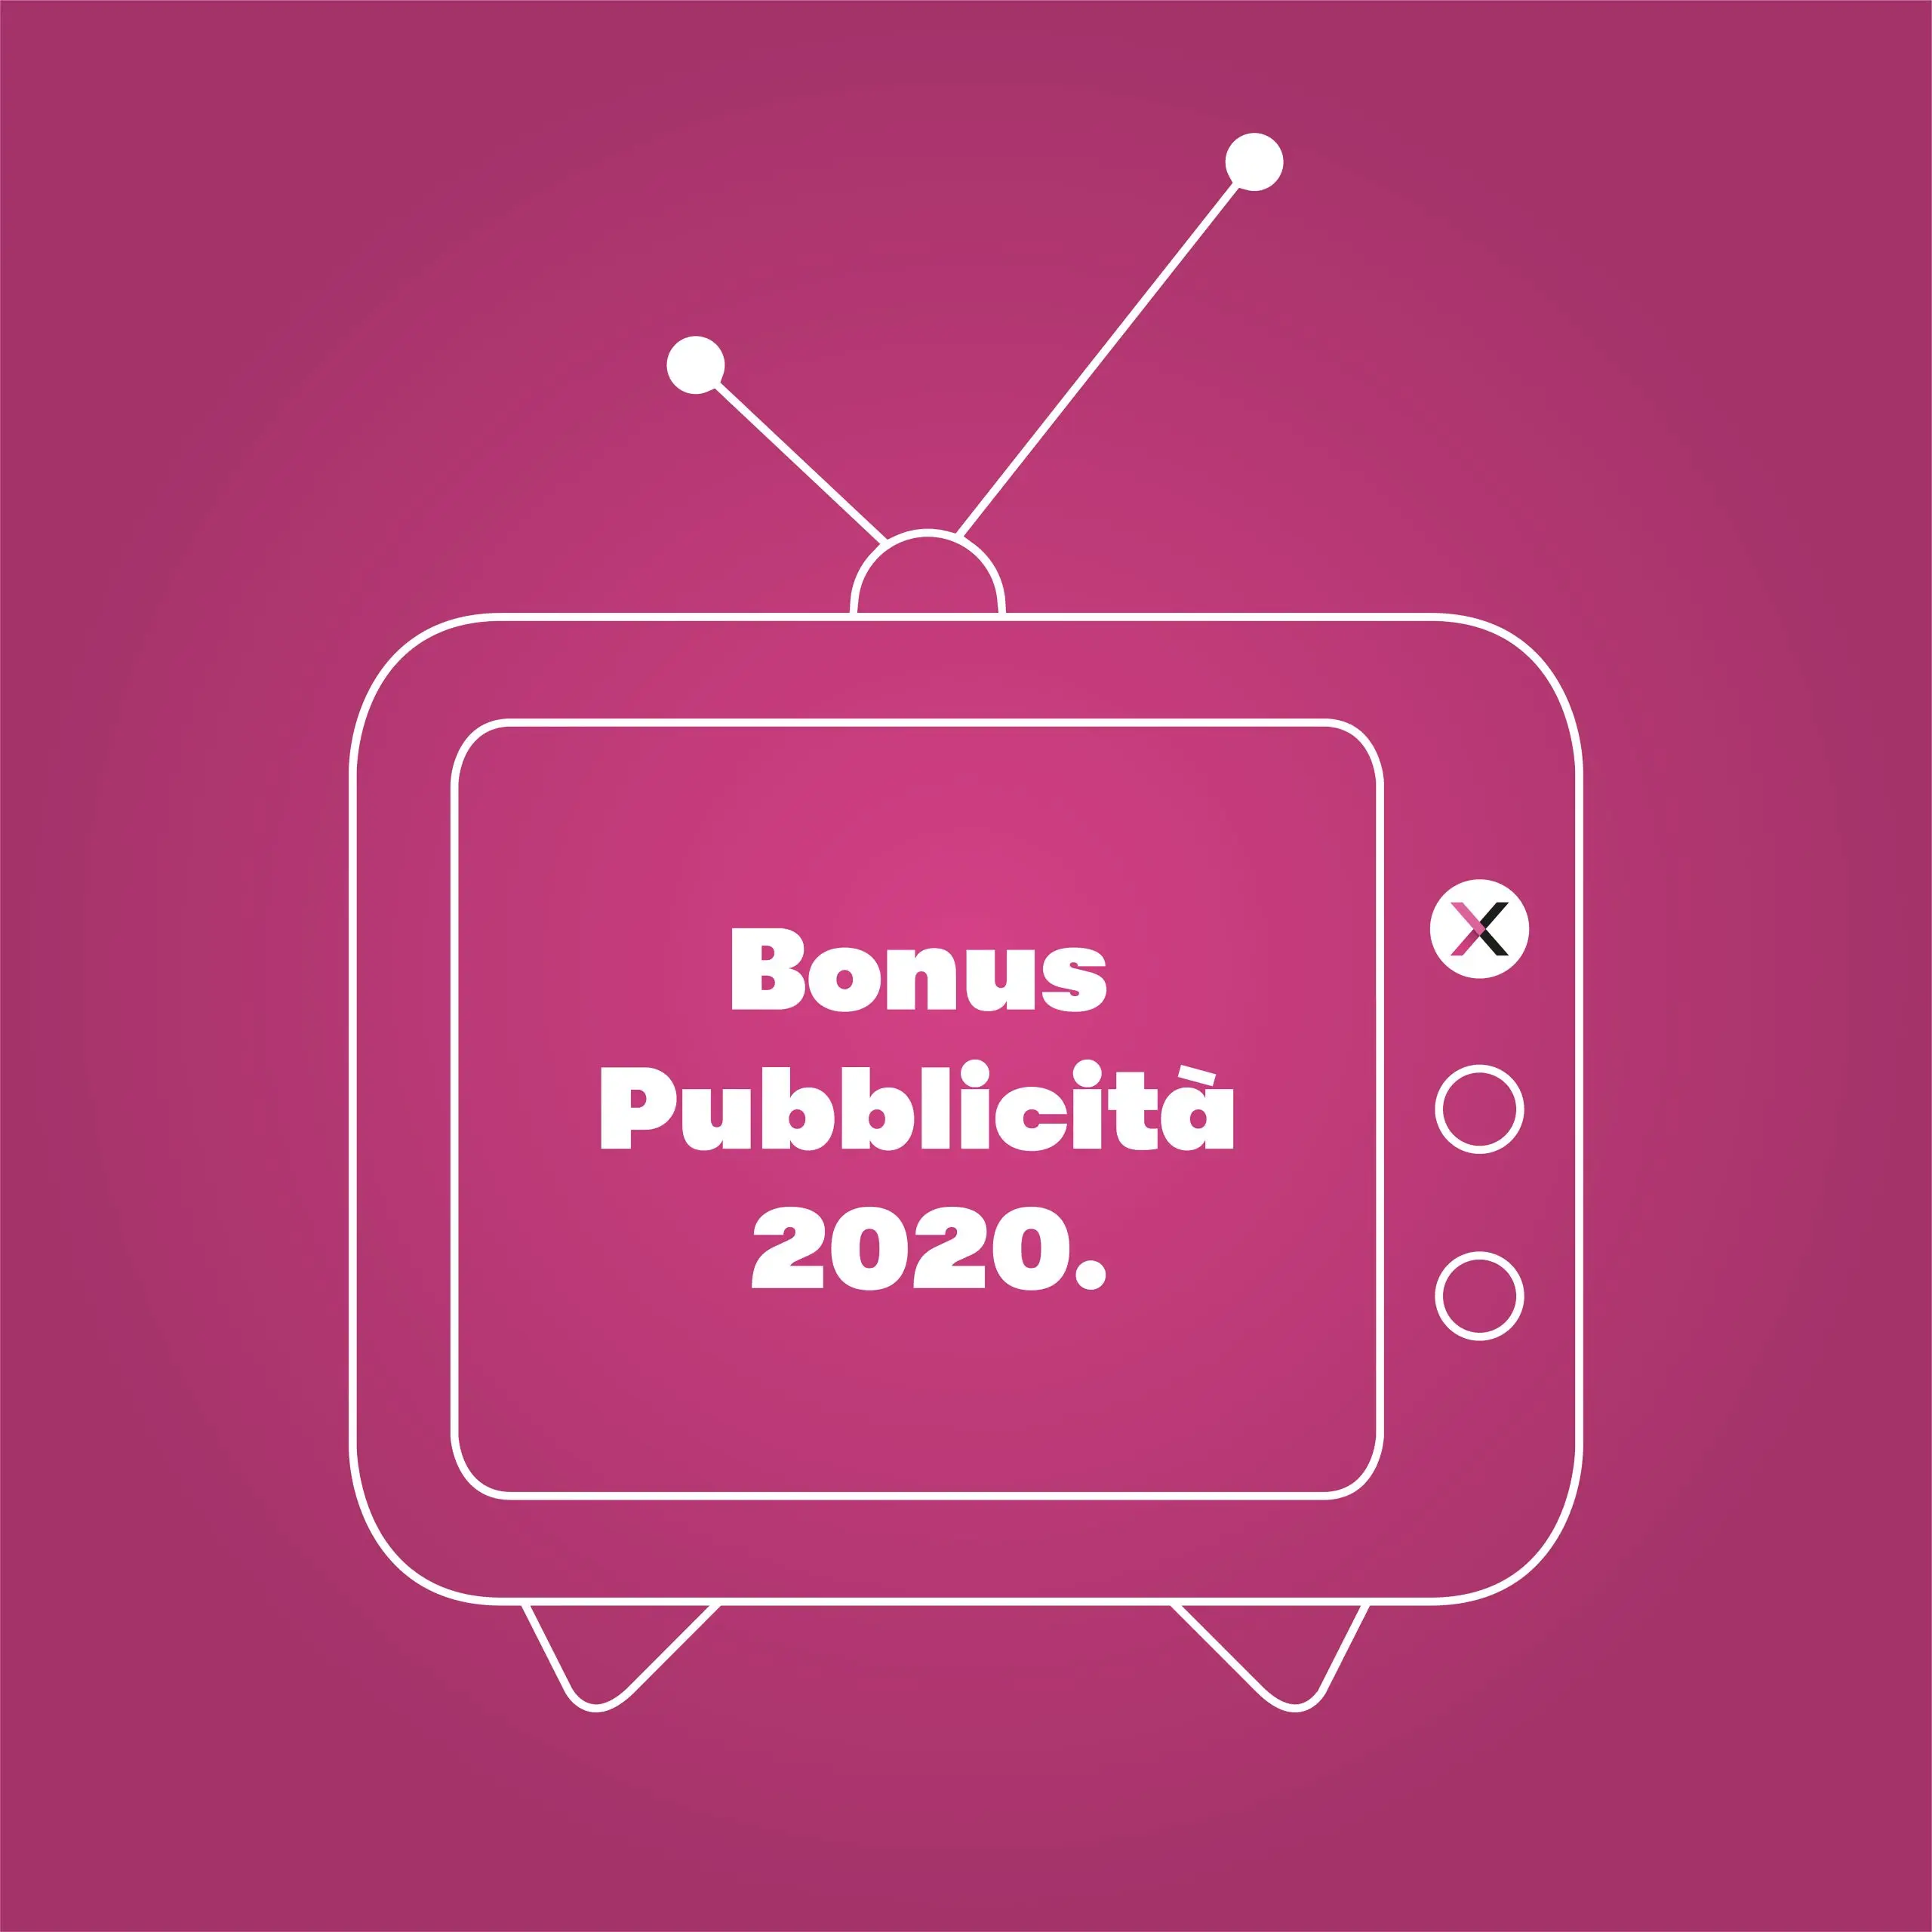 Bonus Pubblicità 2020: dal 1° al 31 marzo accedi al credito d’imposta